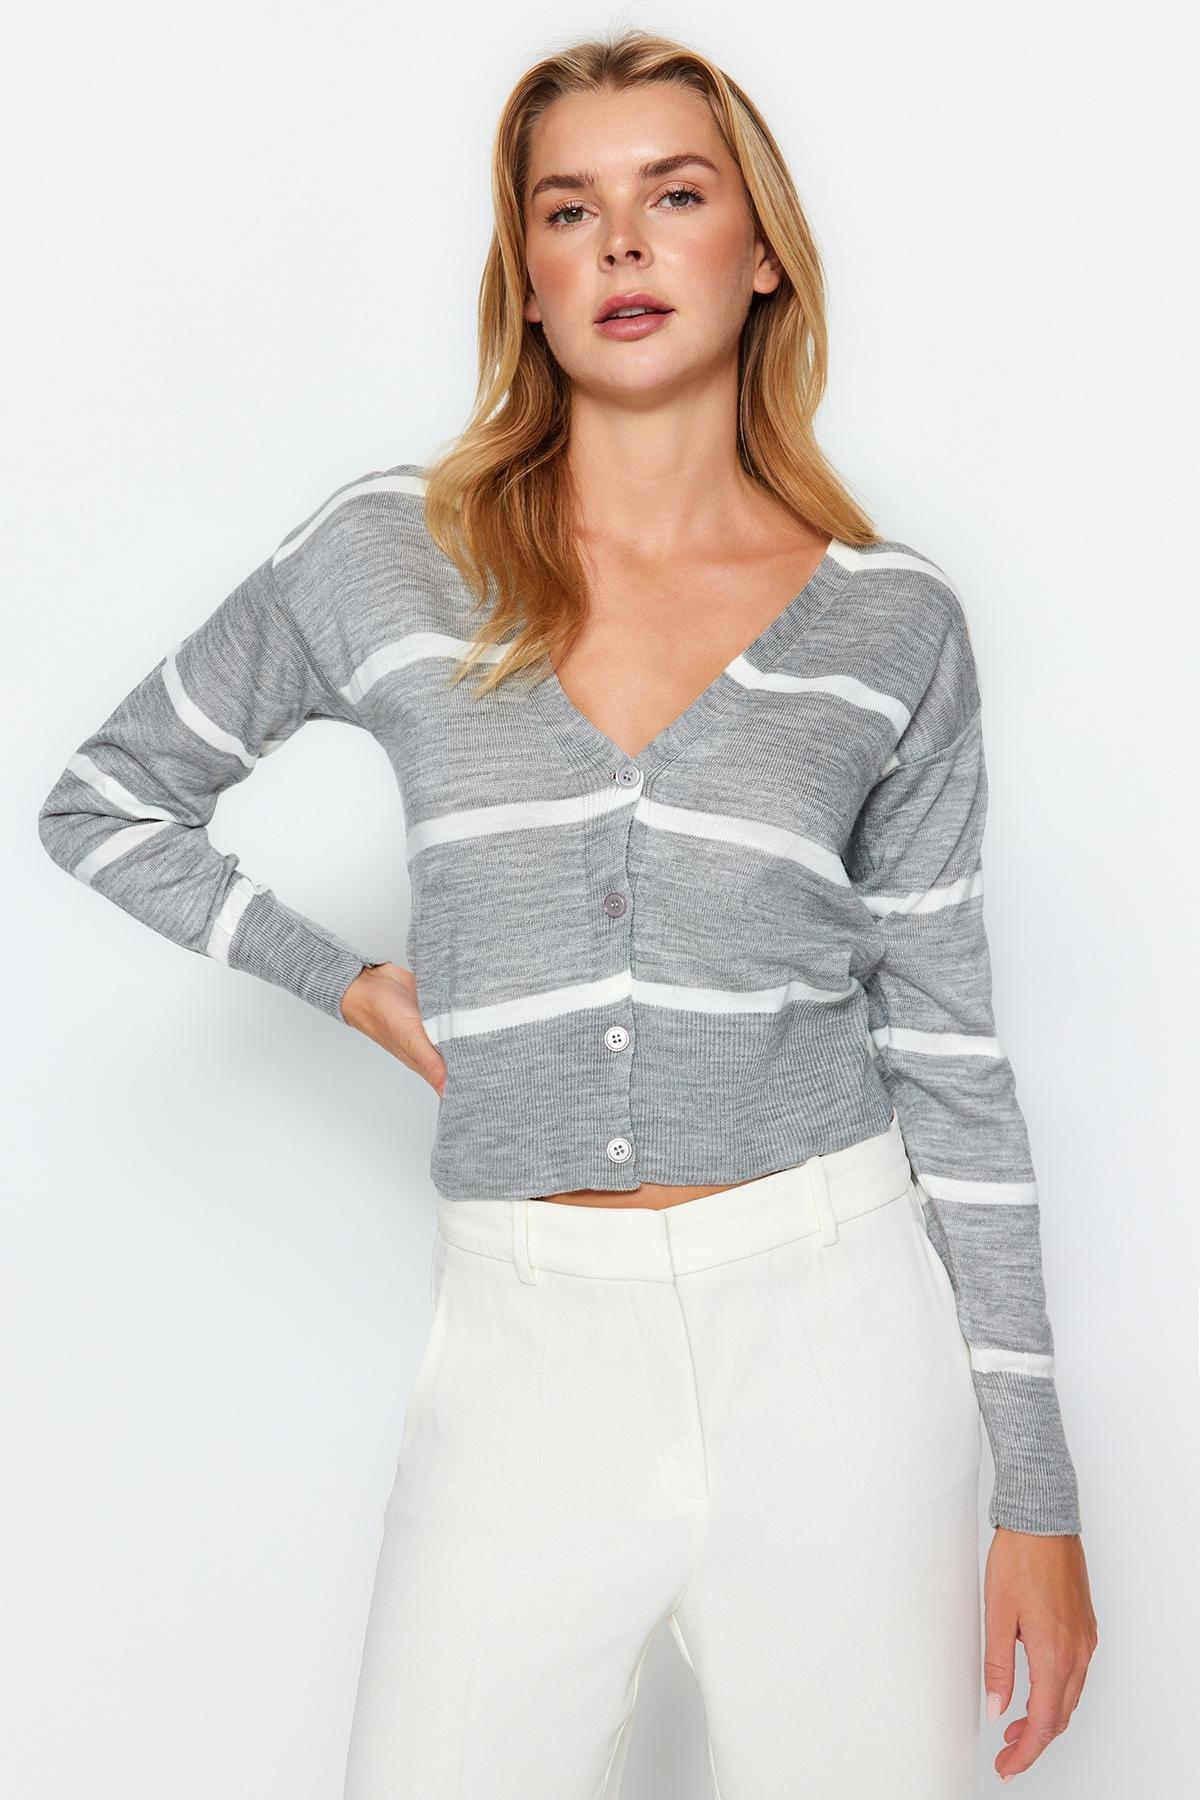 Trendyol - Grey V-Neck Striped Knitted Cardigan